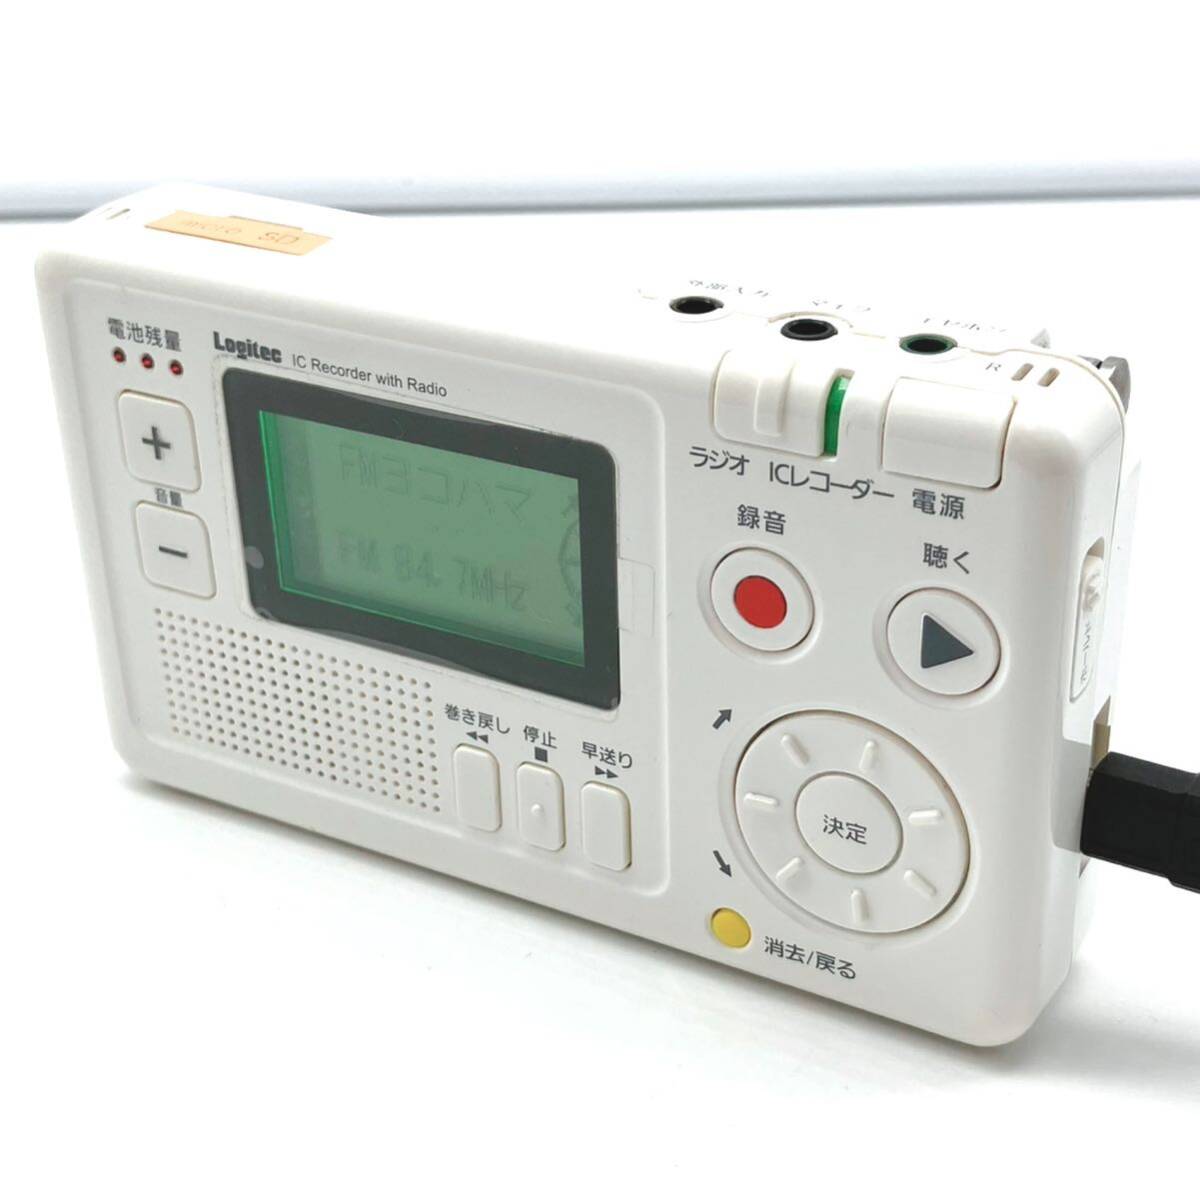 Logitec/ロジテック/IC Recorder with Radio/ラジオ付きICレコーダー/LIC-RR100/中古品/現状品/通電OK/ジャンク/13の画像1